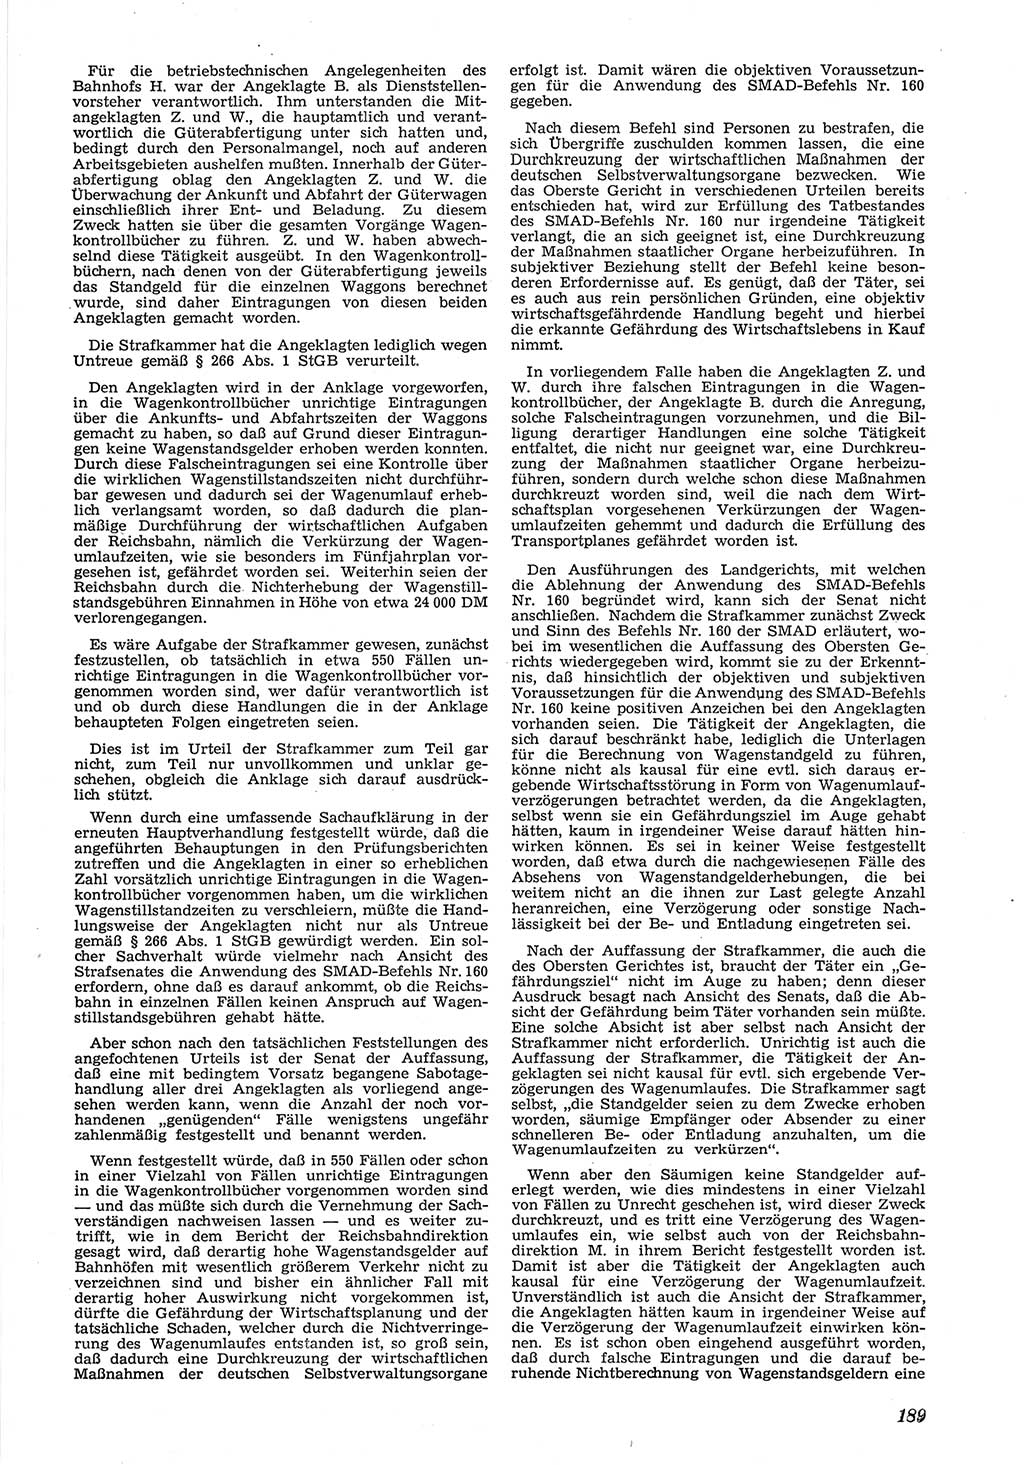 Neue Justiz (NJ), Zeitschrift für Recht und Rechtswissenschaft [Deutsche Demokratische Republik (DDR)], 6. Jahrgang 1952, Seite 189 (NJ DDR 1952, S. 189)